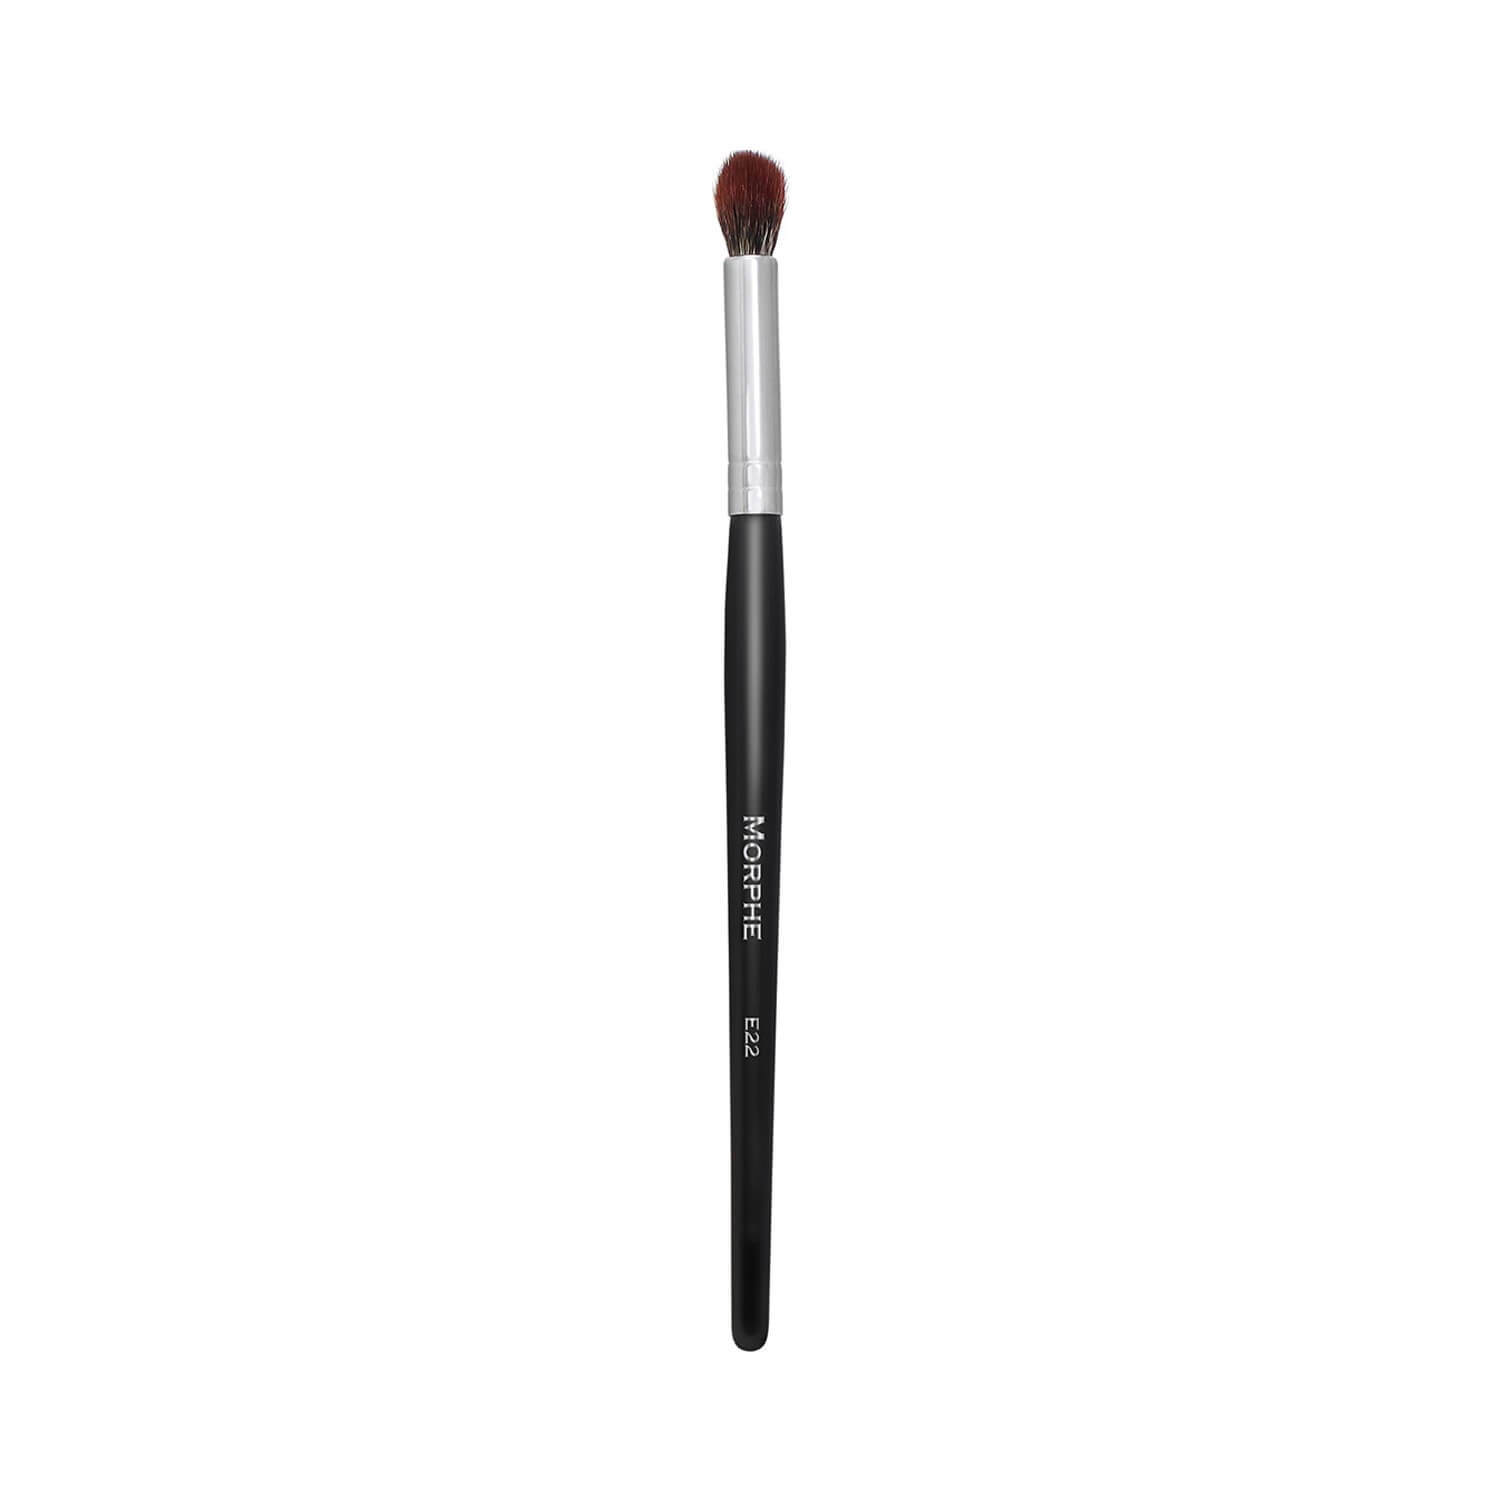 Morphe Cosmetics E22 Pointed Blender Brush